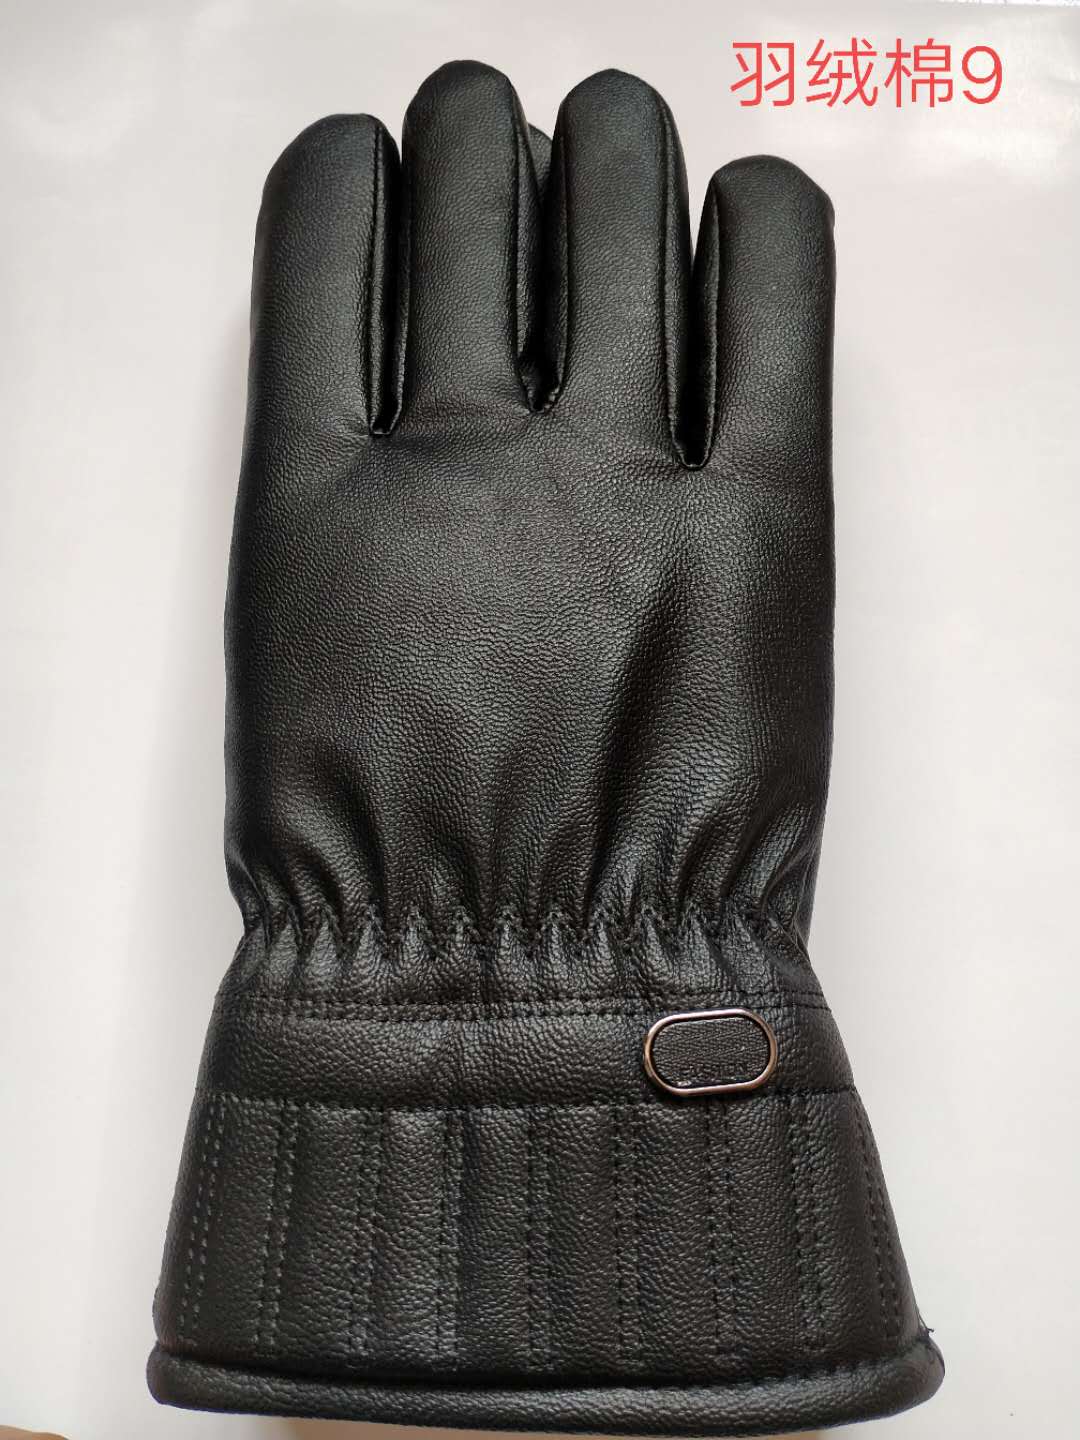 骑行手套保暖手套款式爆款时尚耐用手套厂家直销价格面议166详情图1